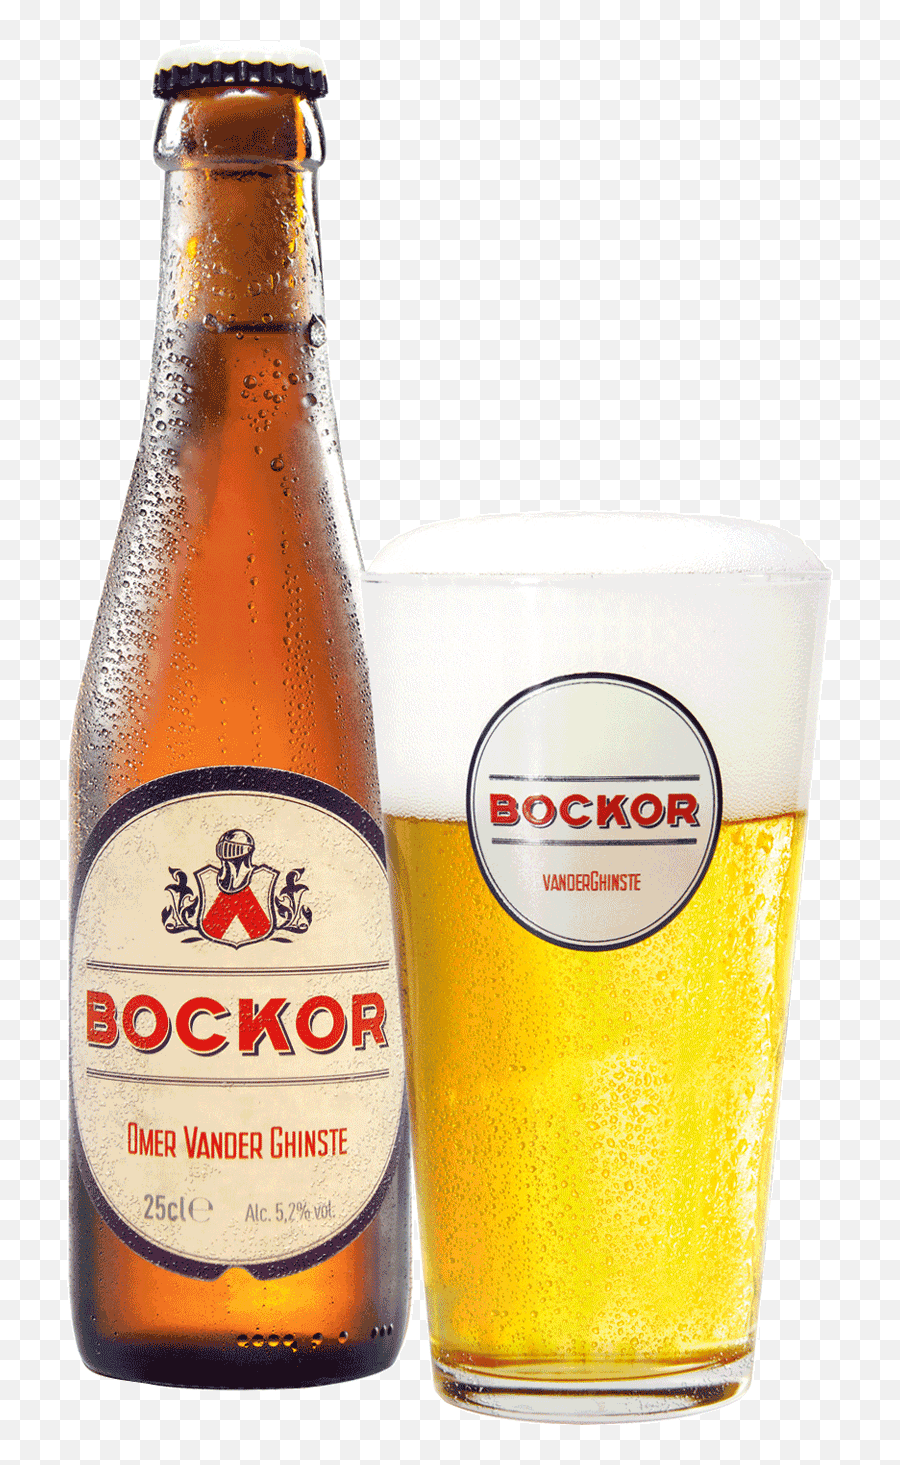 Home - Omer Vander Ghinste Bockor Pils Png,Beer Pint Png